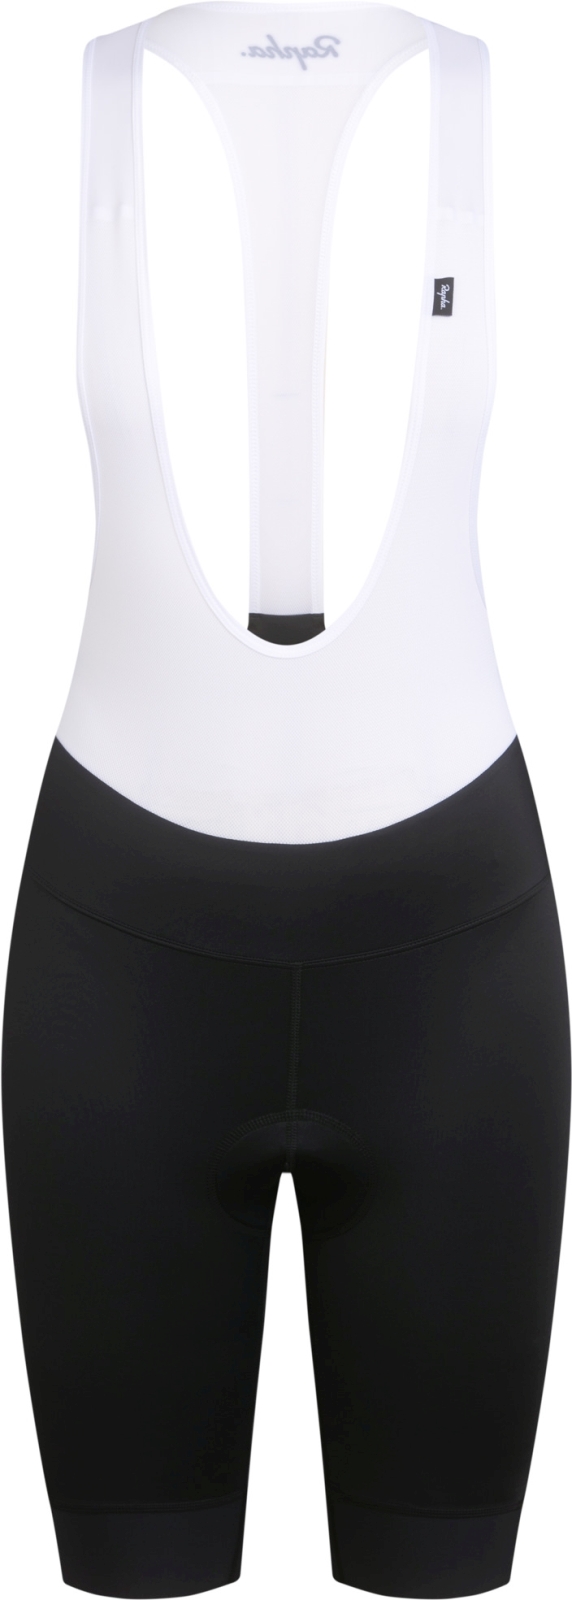 E-shop Rapha Women's Detachable Bib Shorts - Black/White L